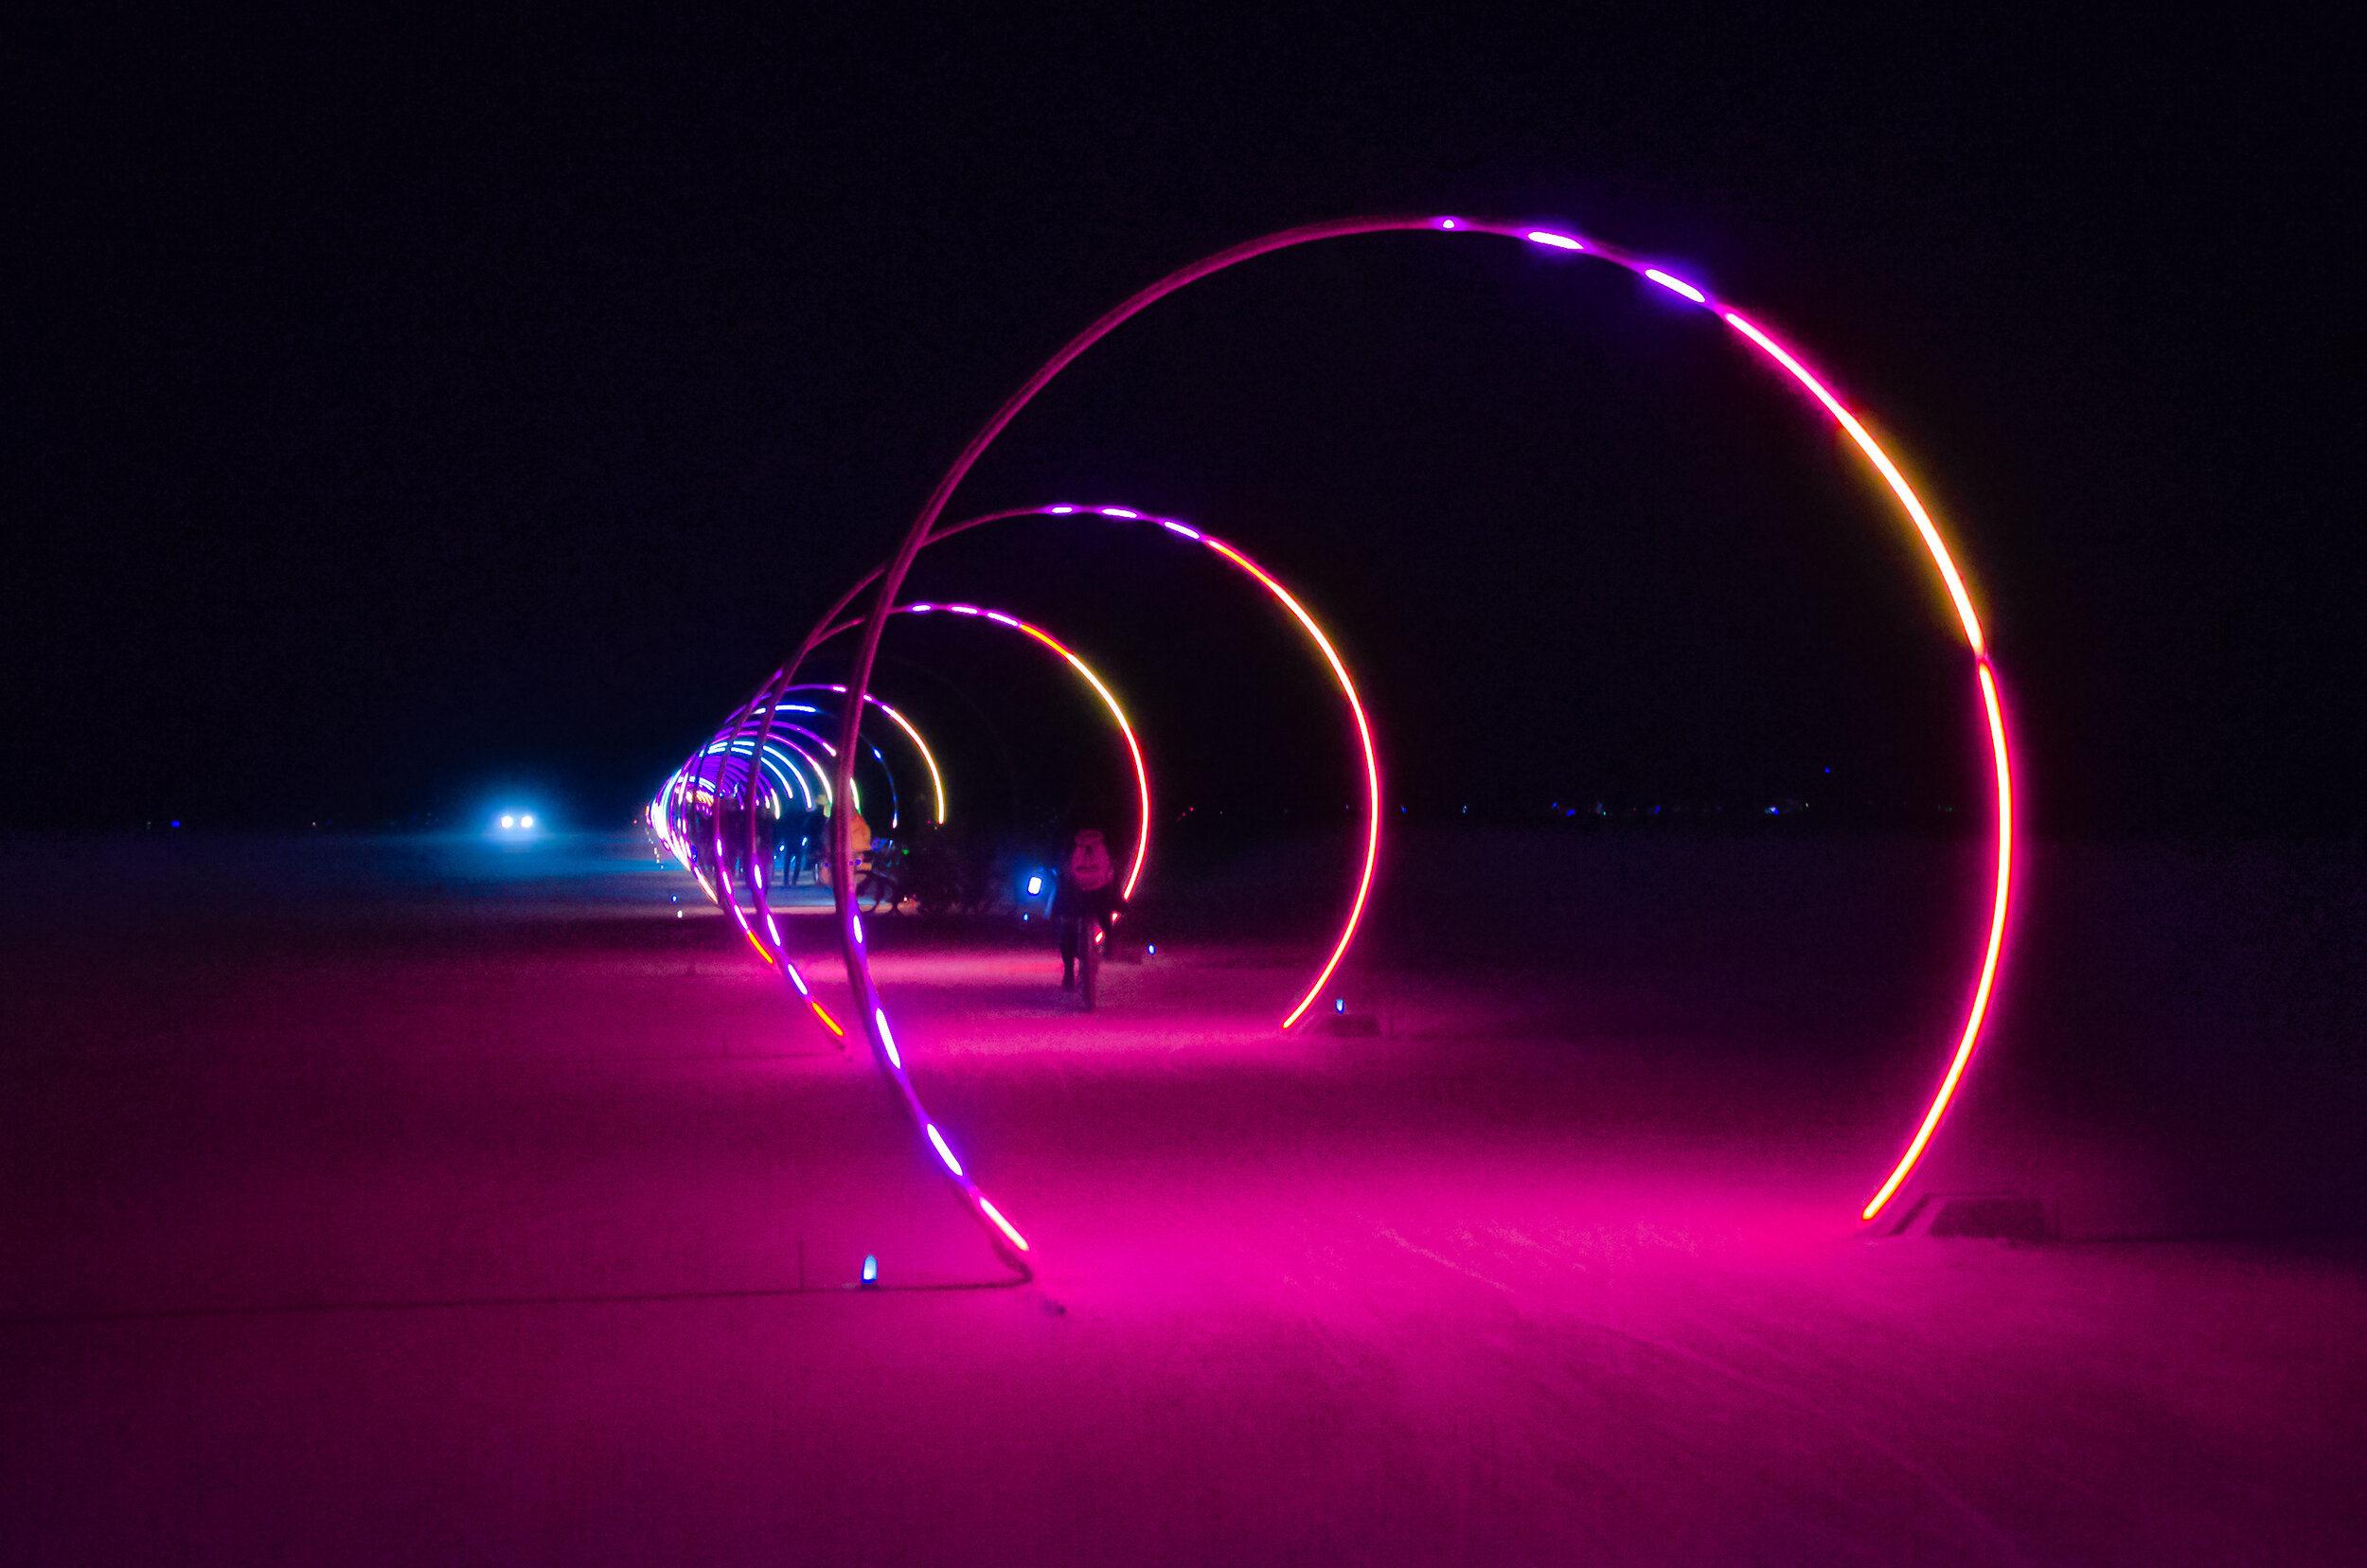 Burning Man 2018 - Sonic Runway at night